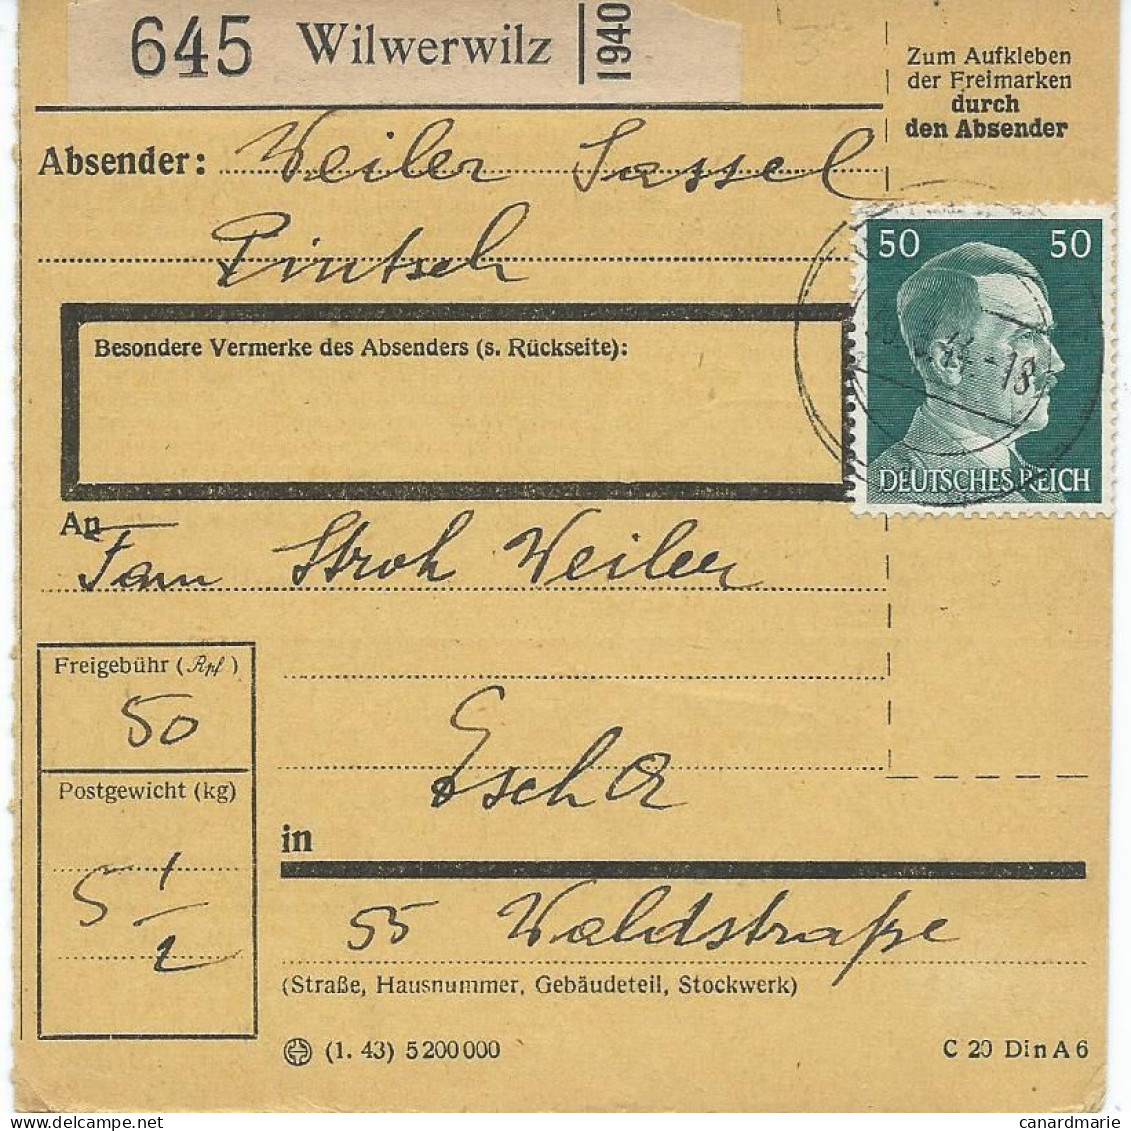 BULLETIN DE COLIS POSTAL 1944 AVEC ETIQUETTE DE WILWERWILZ - 1940-1944 Deutsche Besatzung